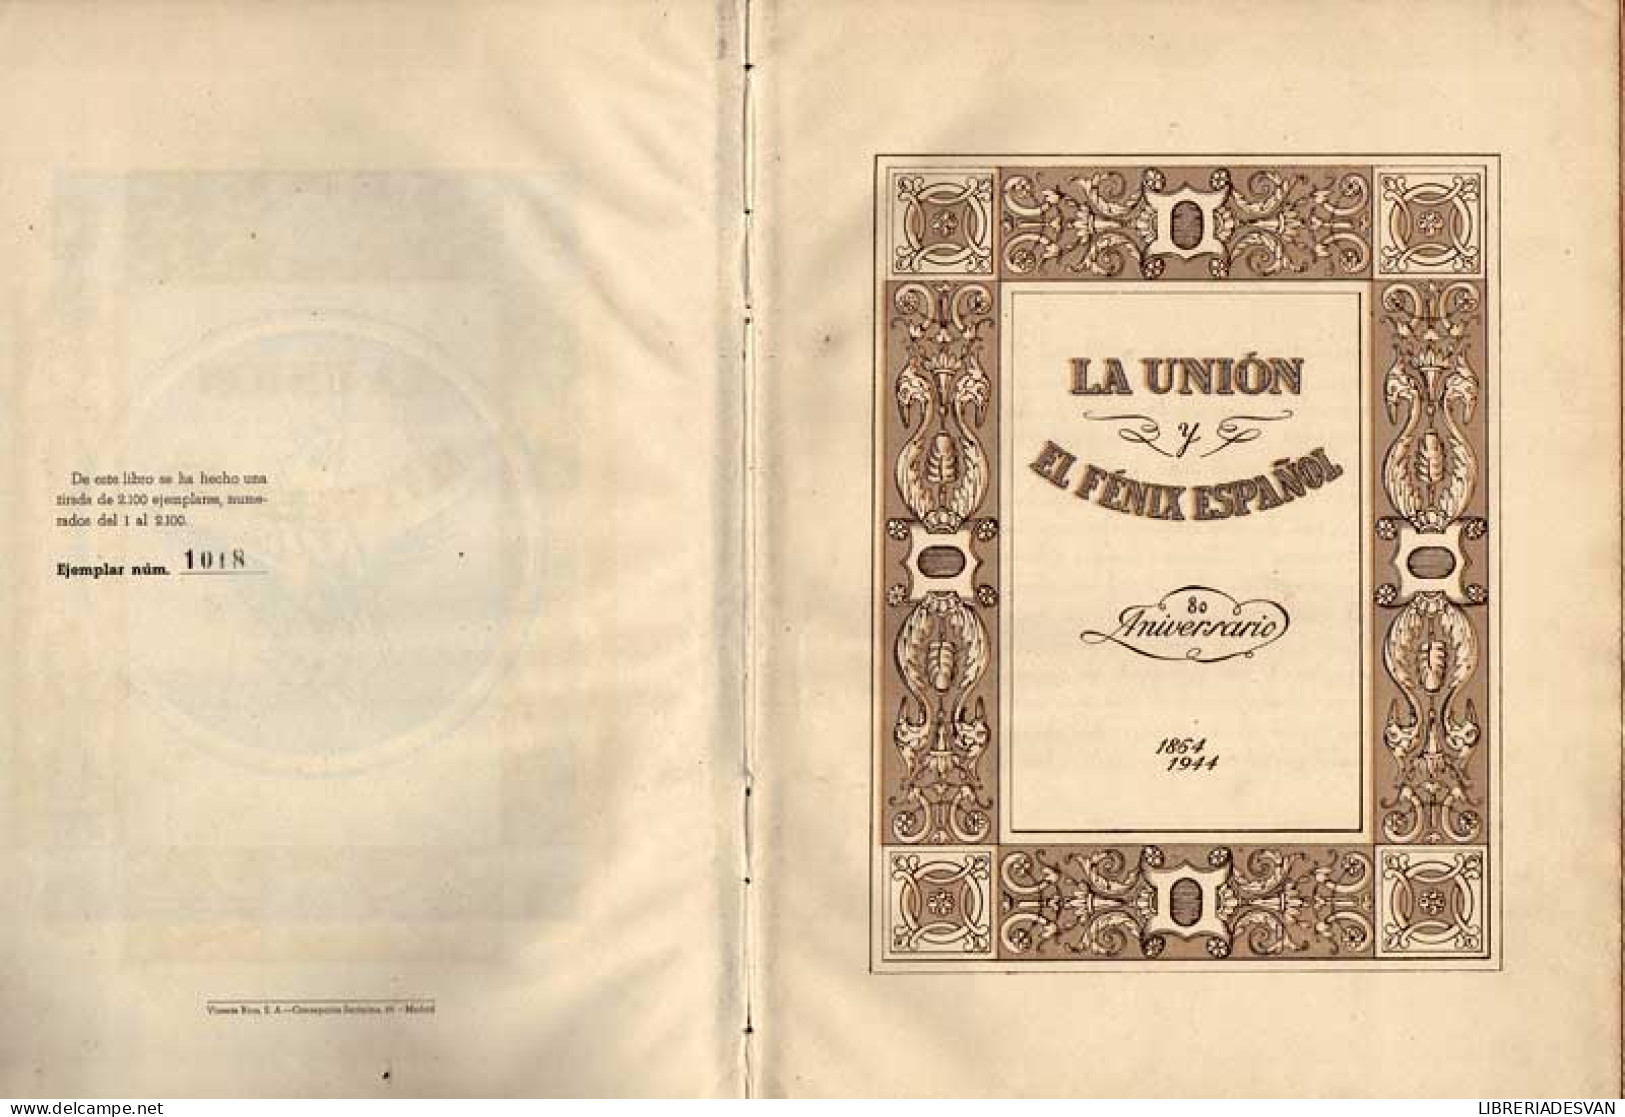 La Unión Y Fénix Español 80 Aniversario 1864-1944 - Histoire Et Art